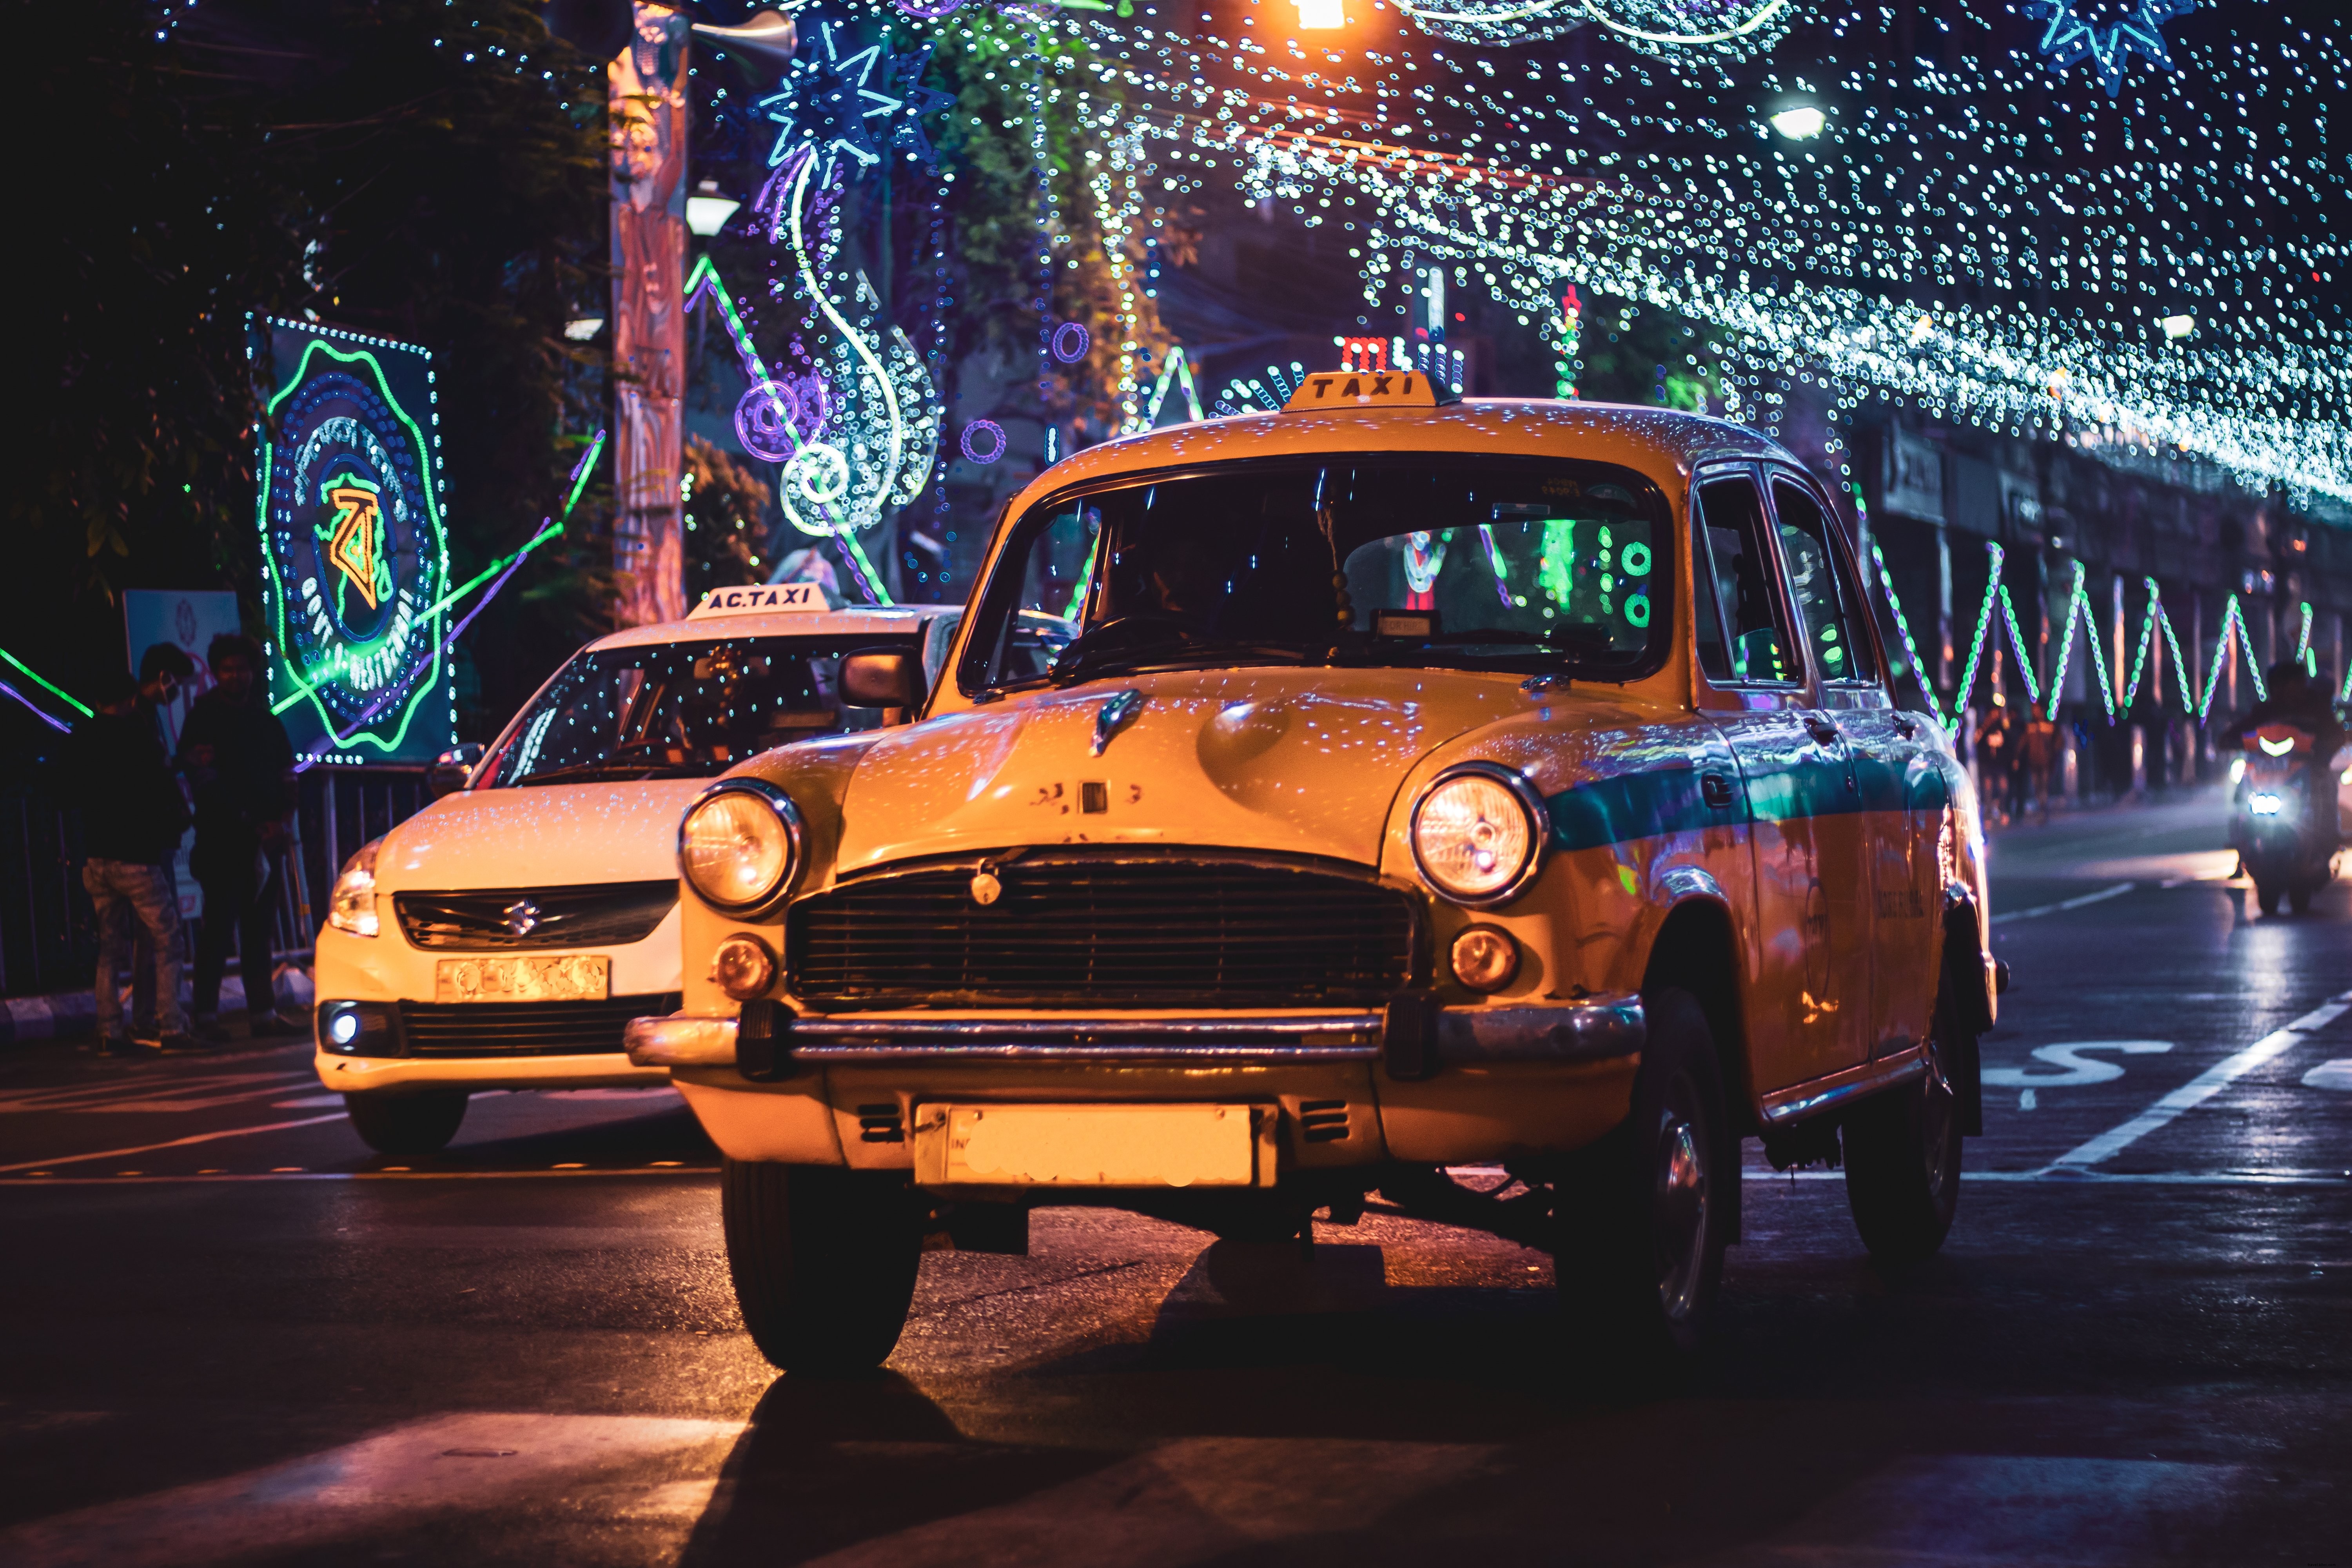 Luz de táxi com cordas de luzes à noite foto 